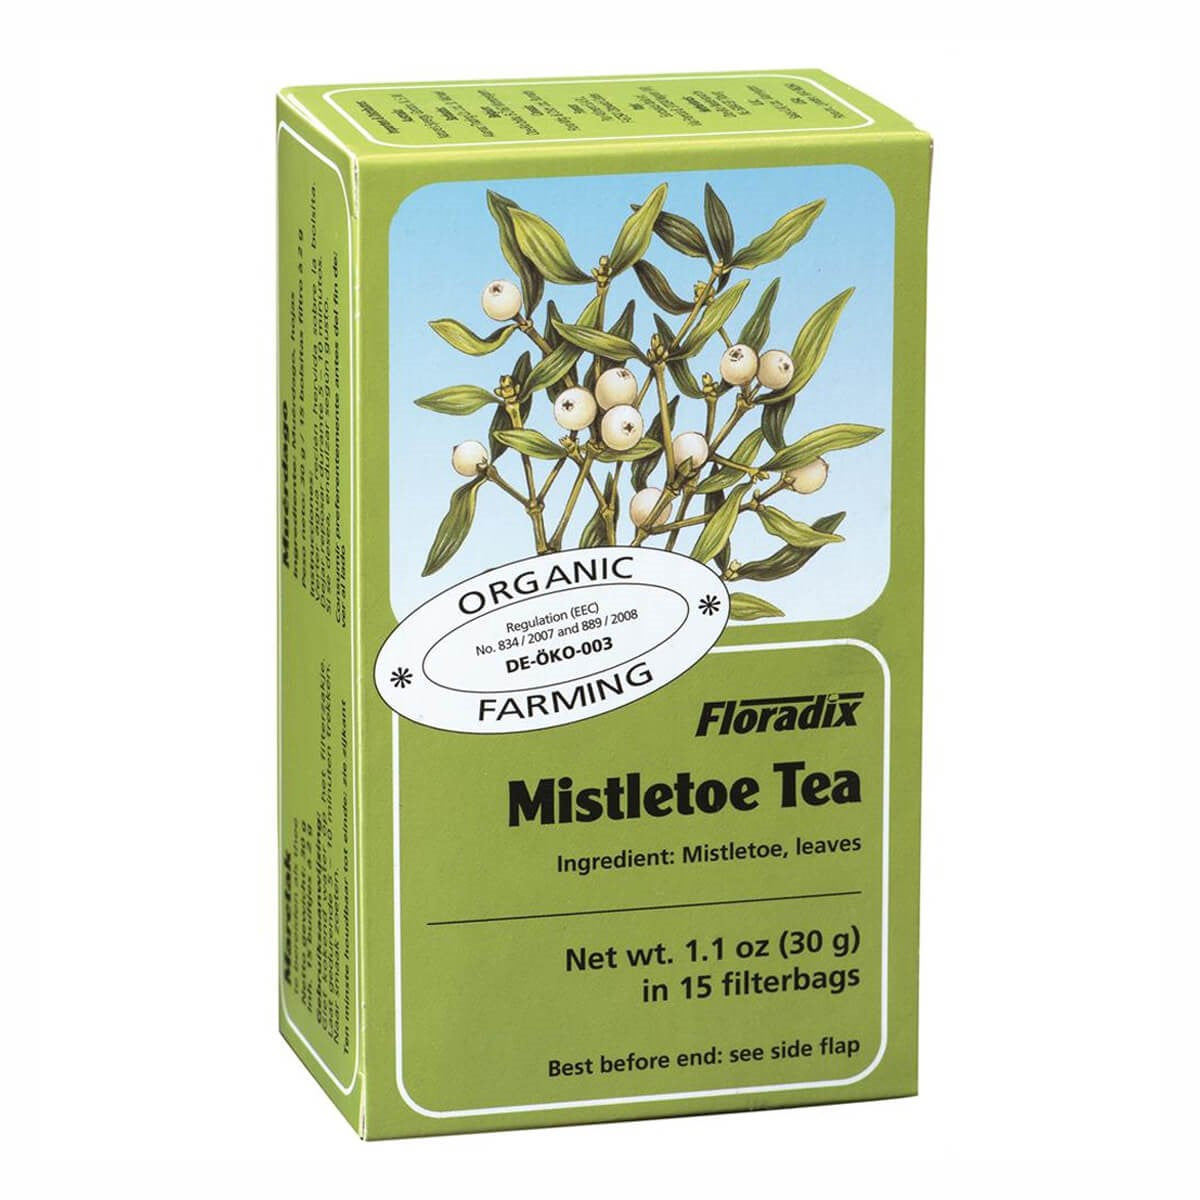 Floradix Mistletoe Herbal Tea 15 filterbags - Just Natural